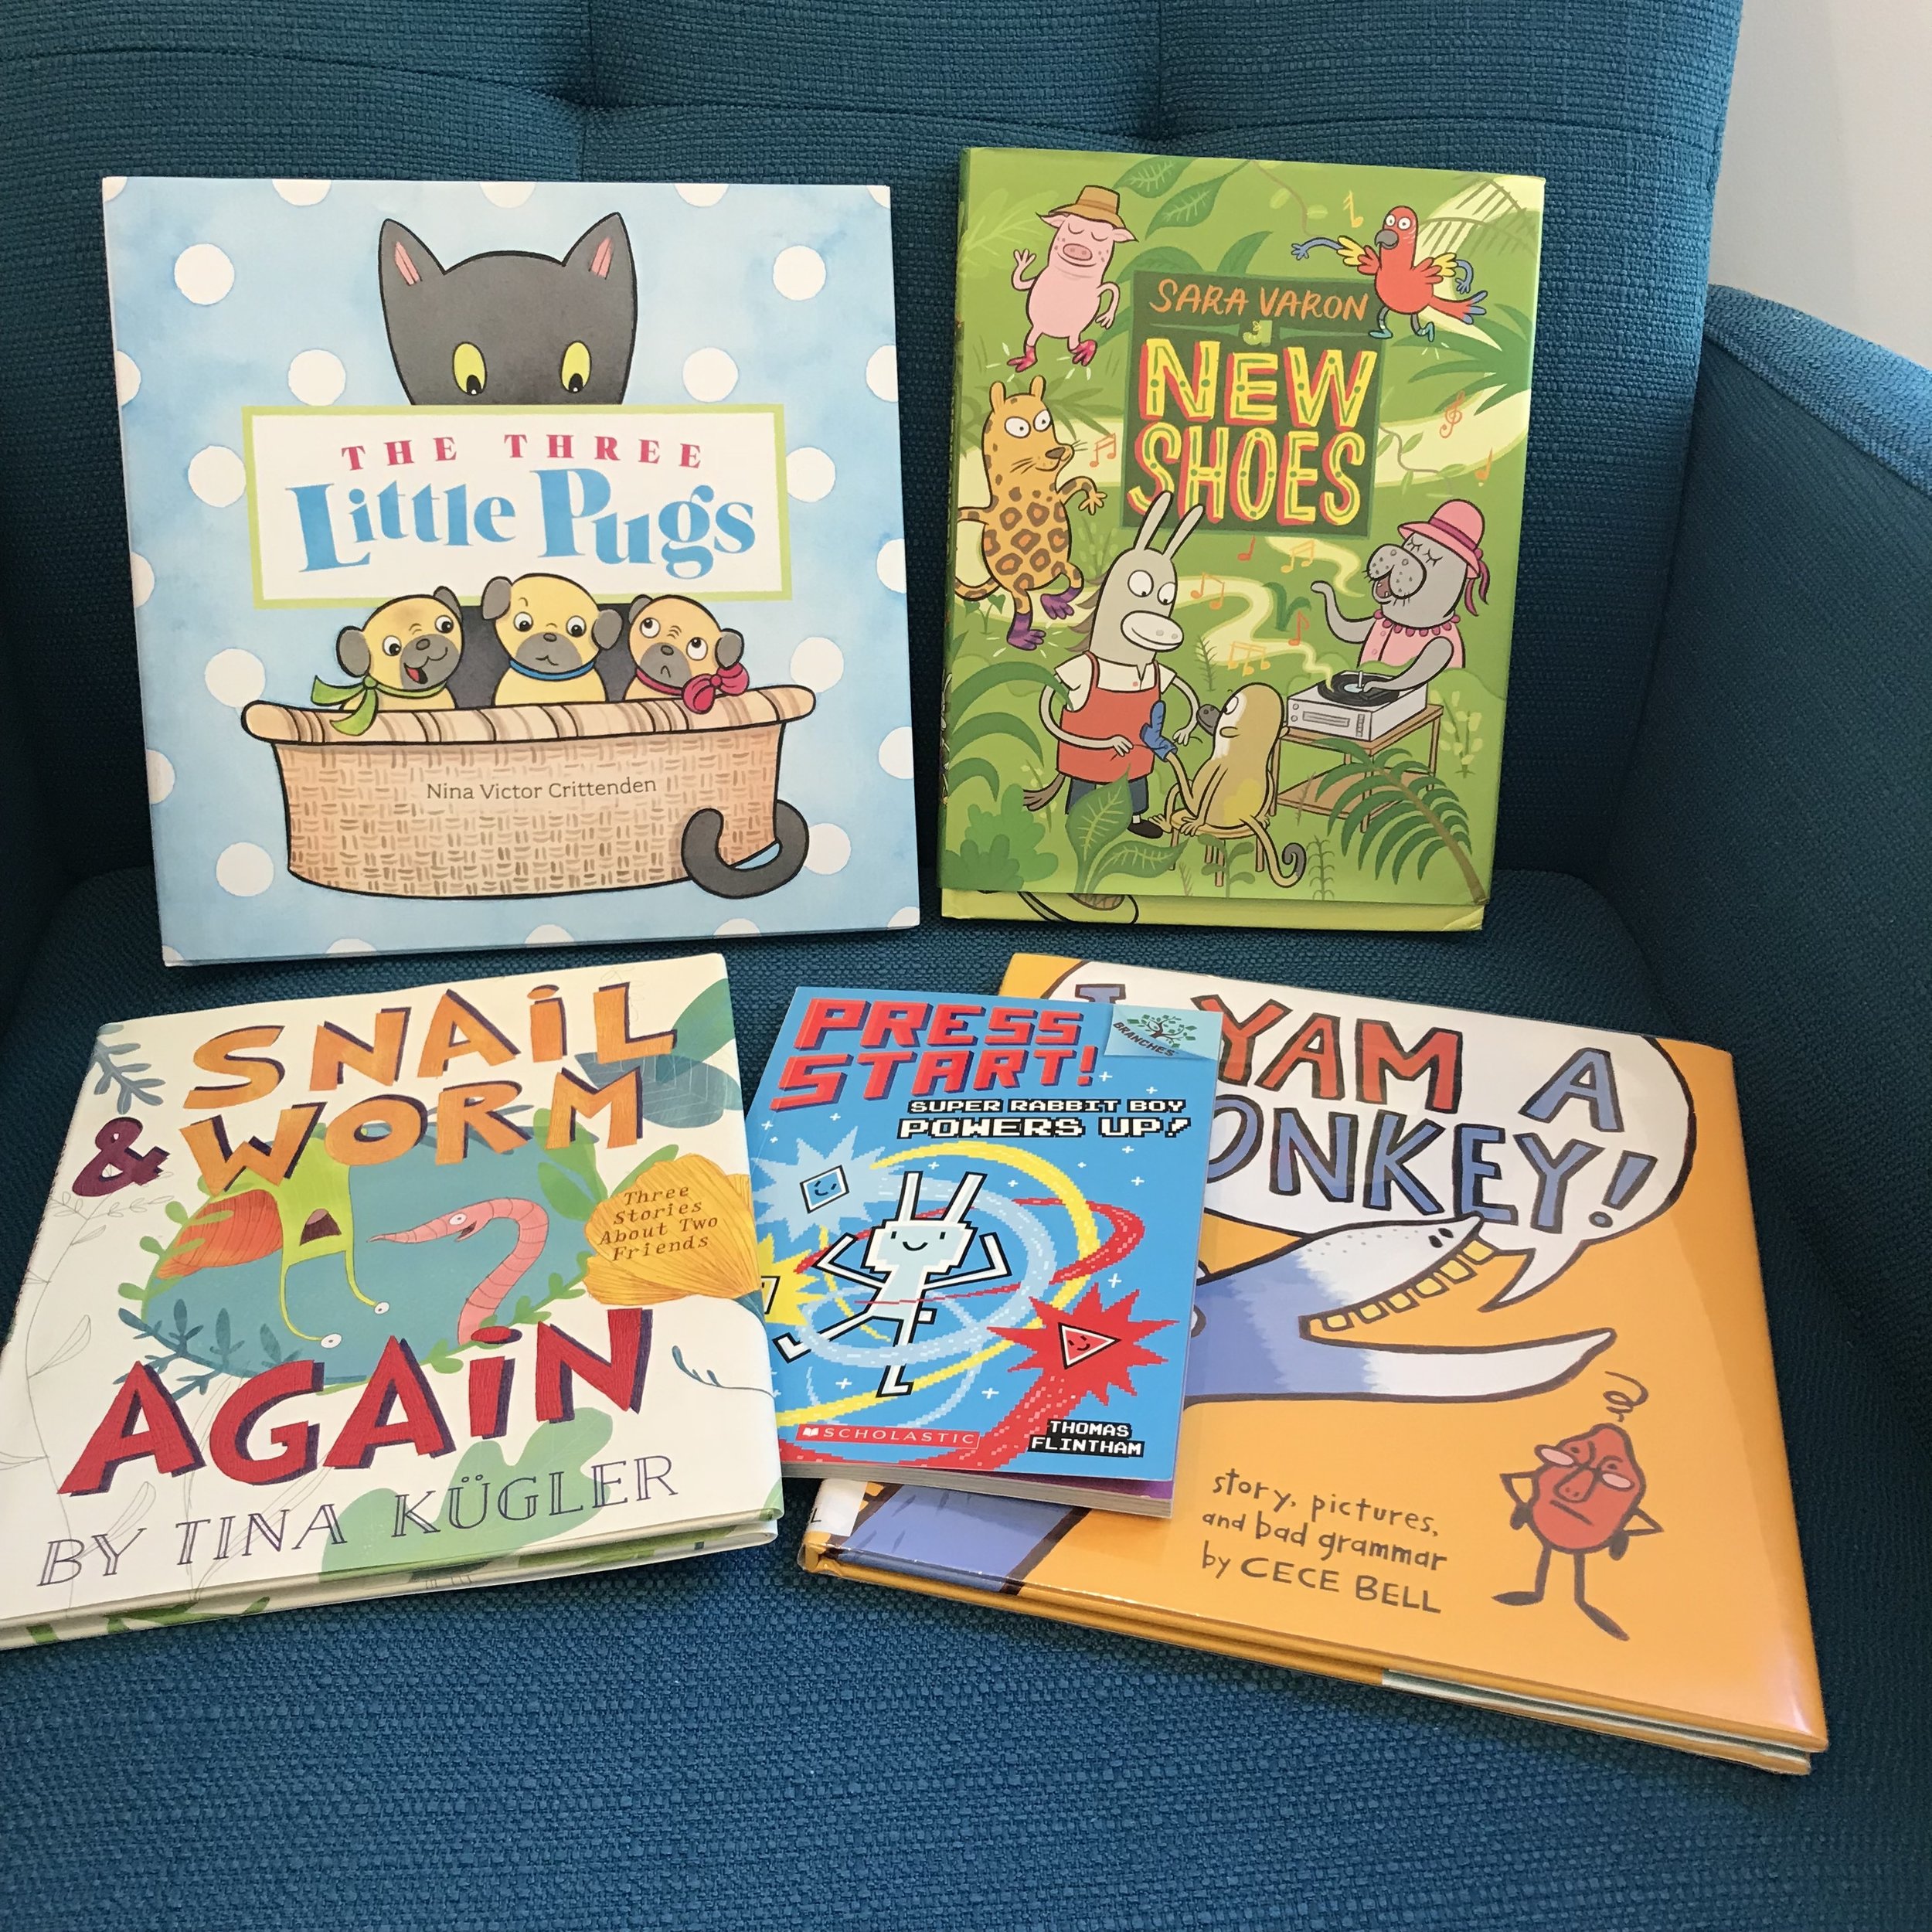 Kidlit Writer's Starter Kit - How to write Children's Books